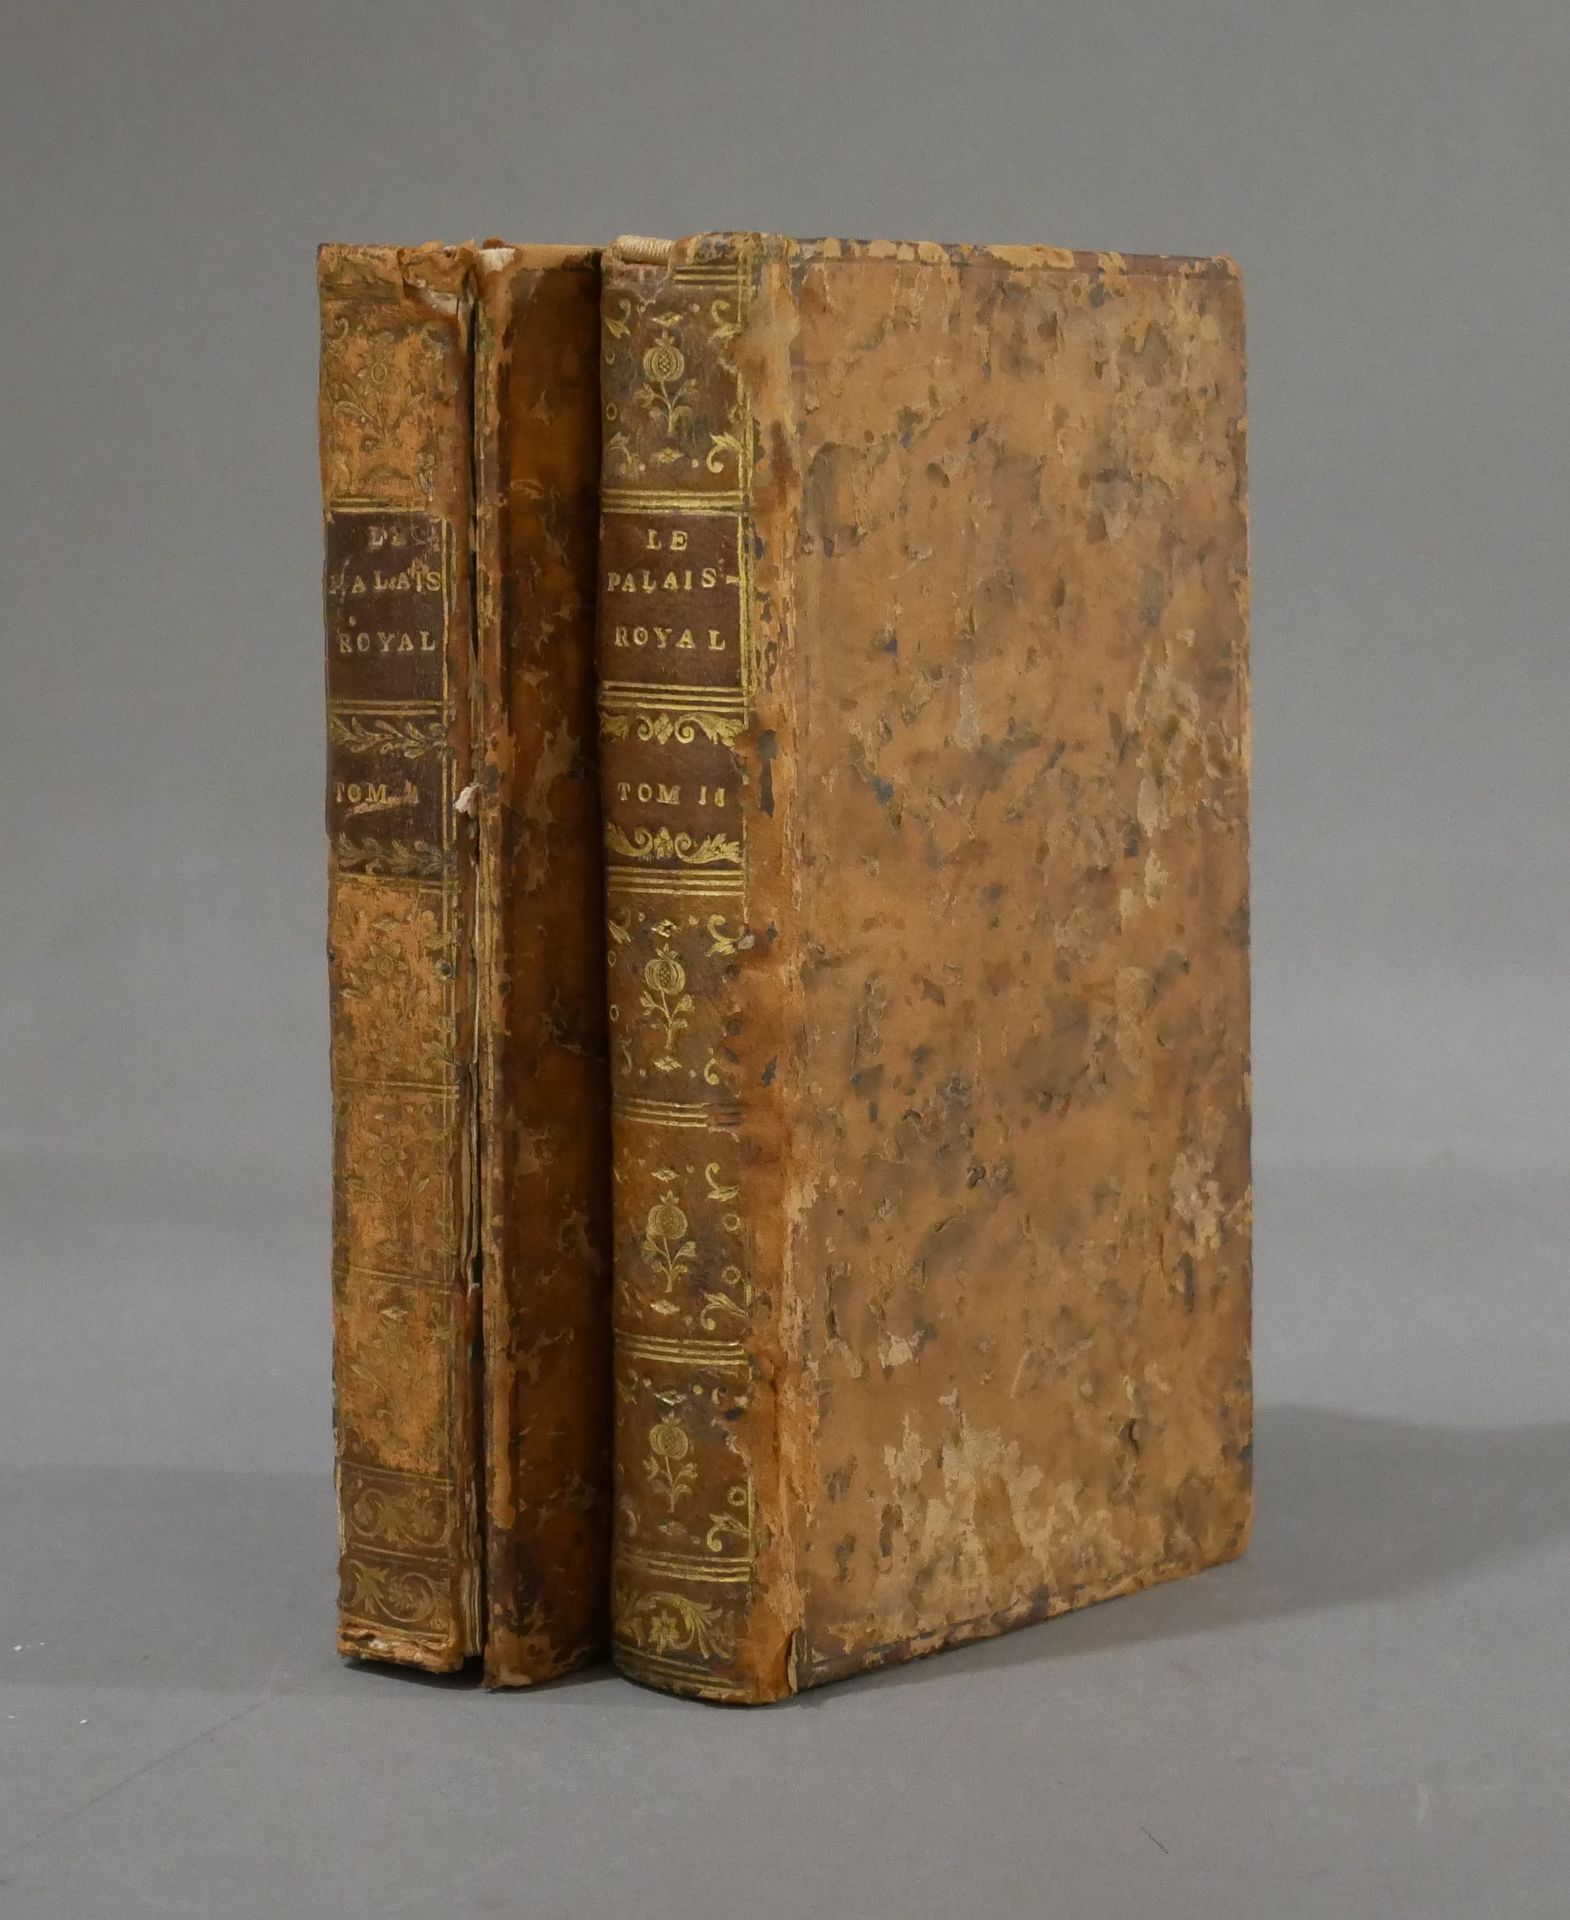 Null Nicolas Edme RETIF DE LA BRETONNE

巴黎皇宫，1790年

第一和第二卷，12开本（装订损坏）